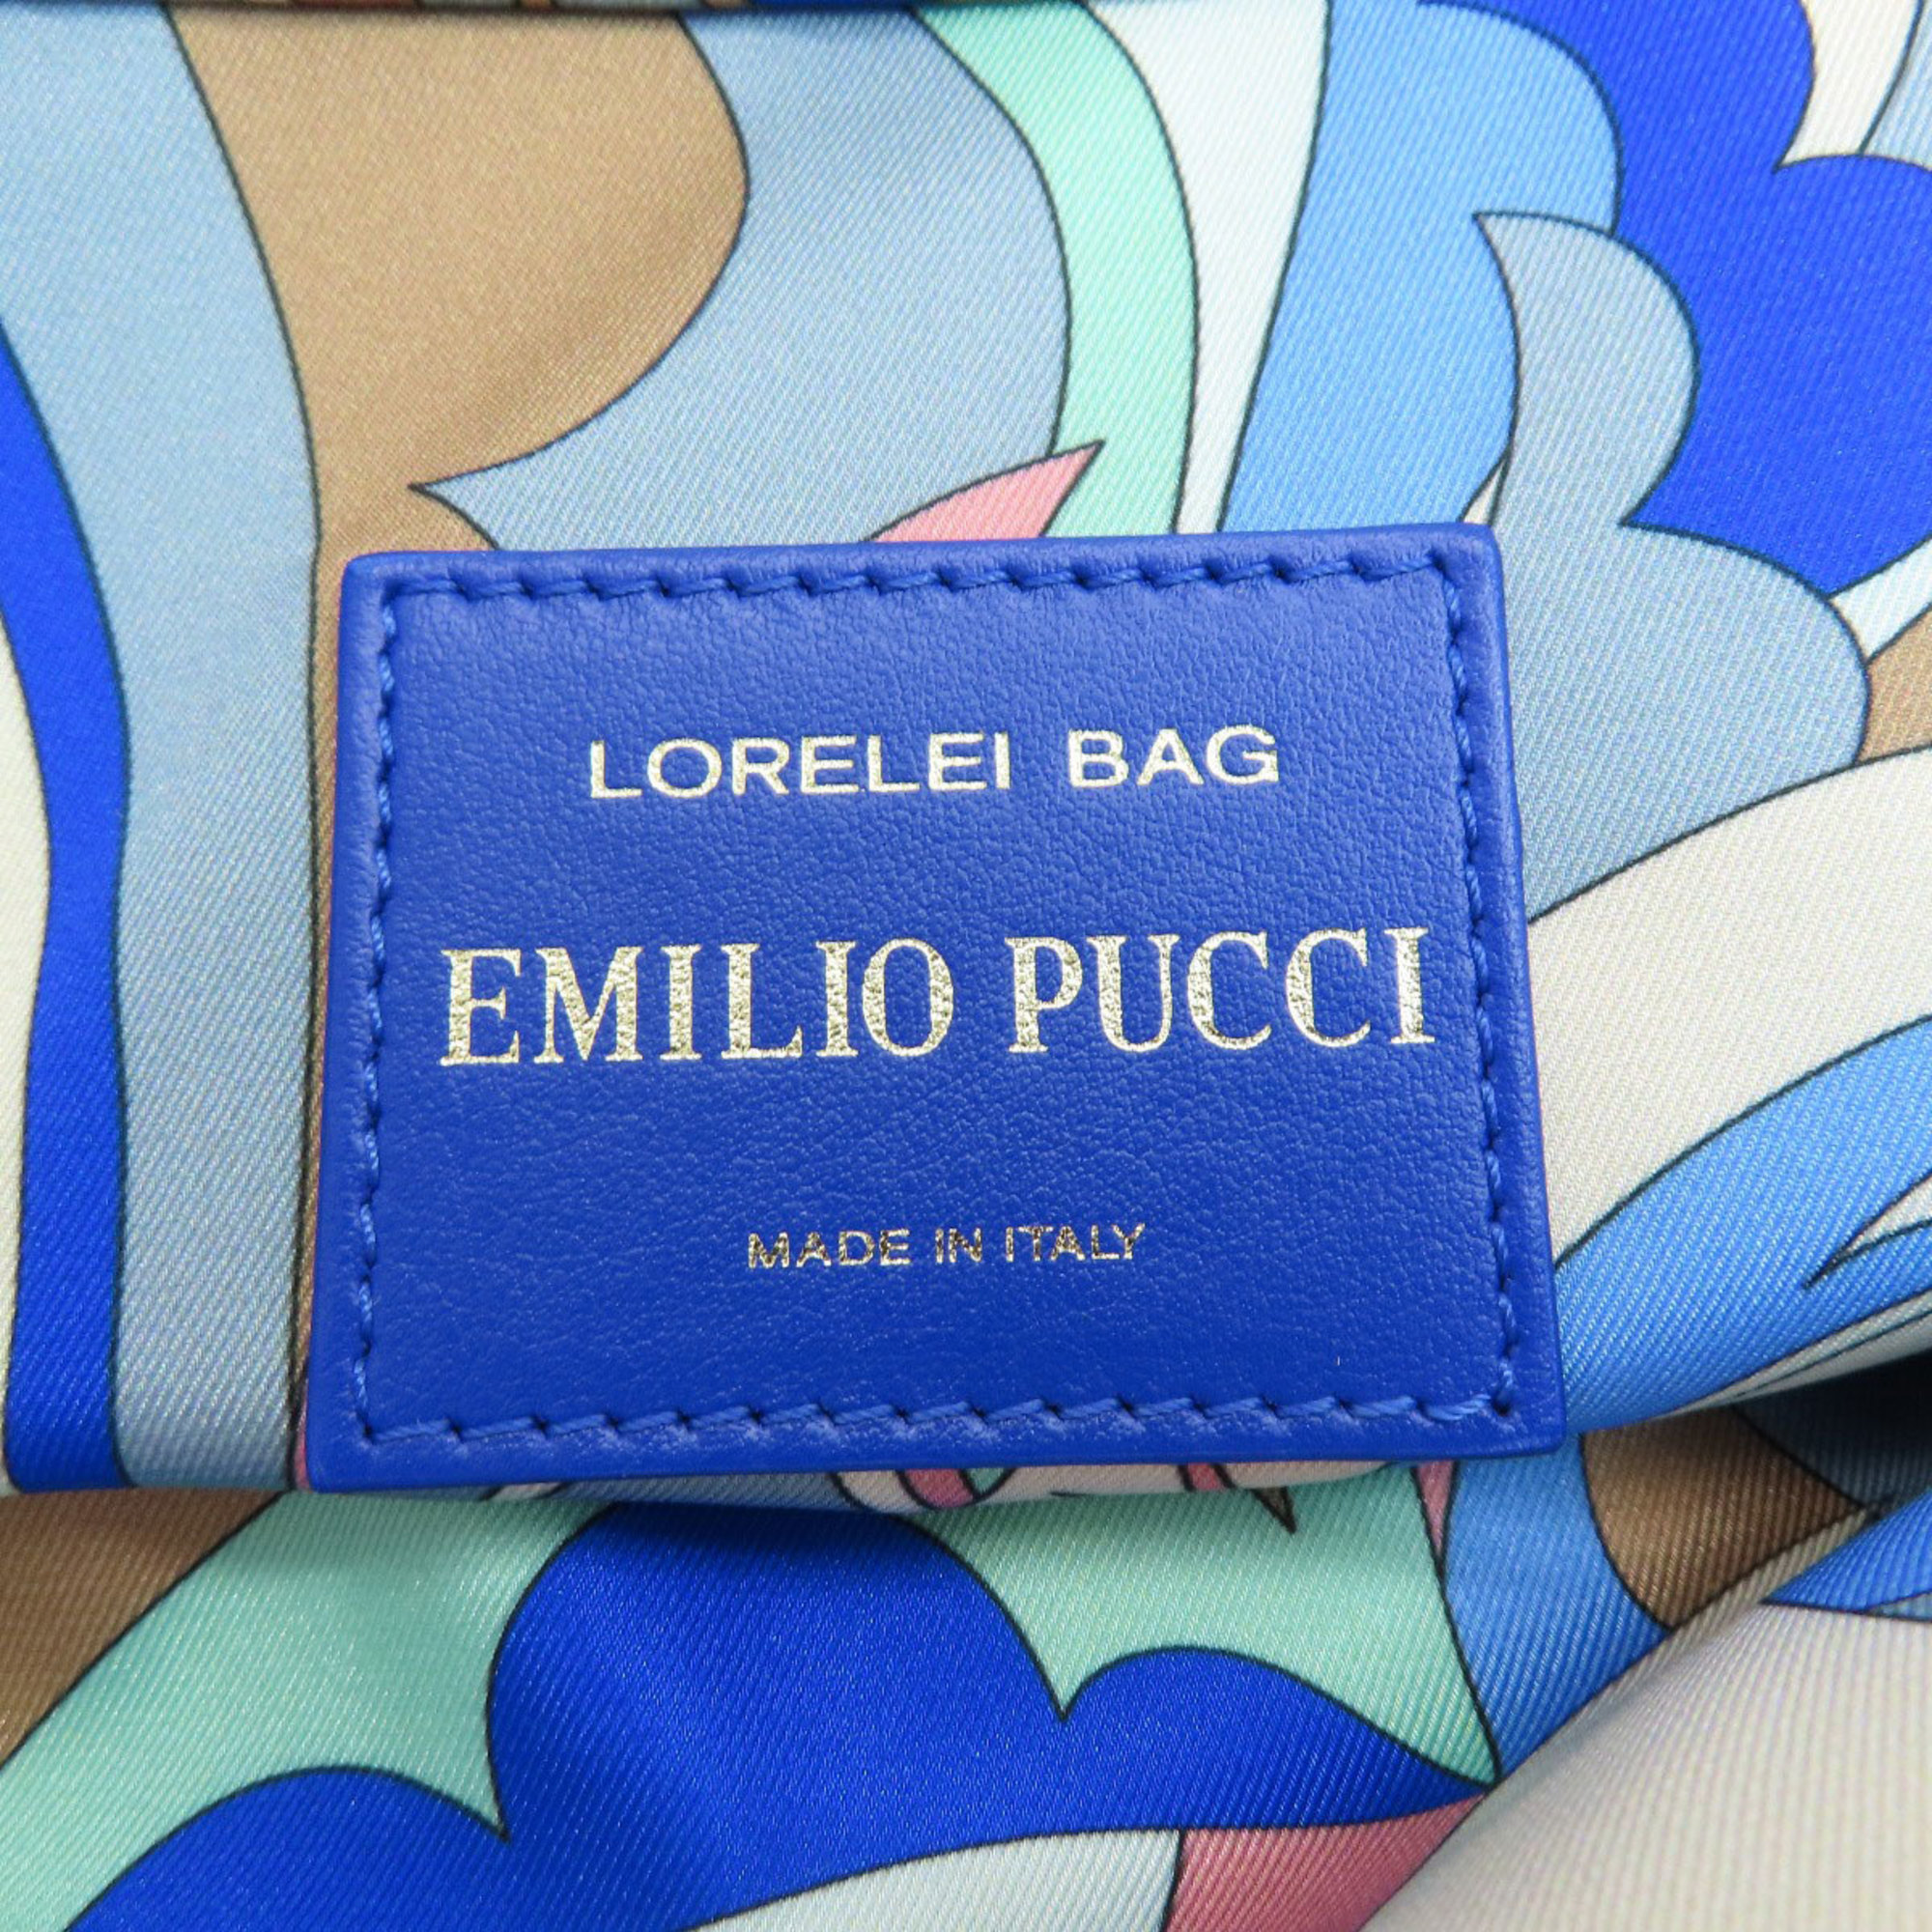 Emilio Pucci Tote Bag Nylon Material/Leather Women's